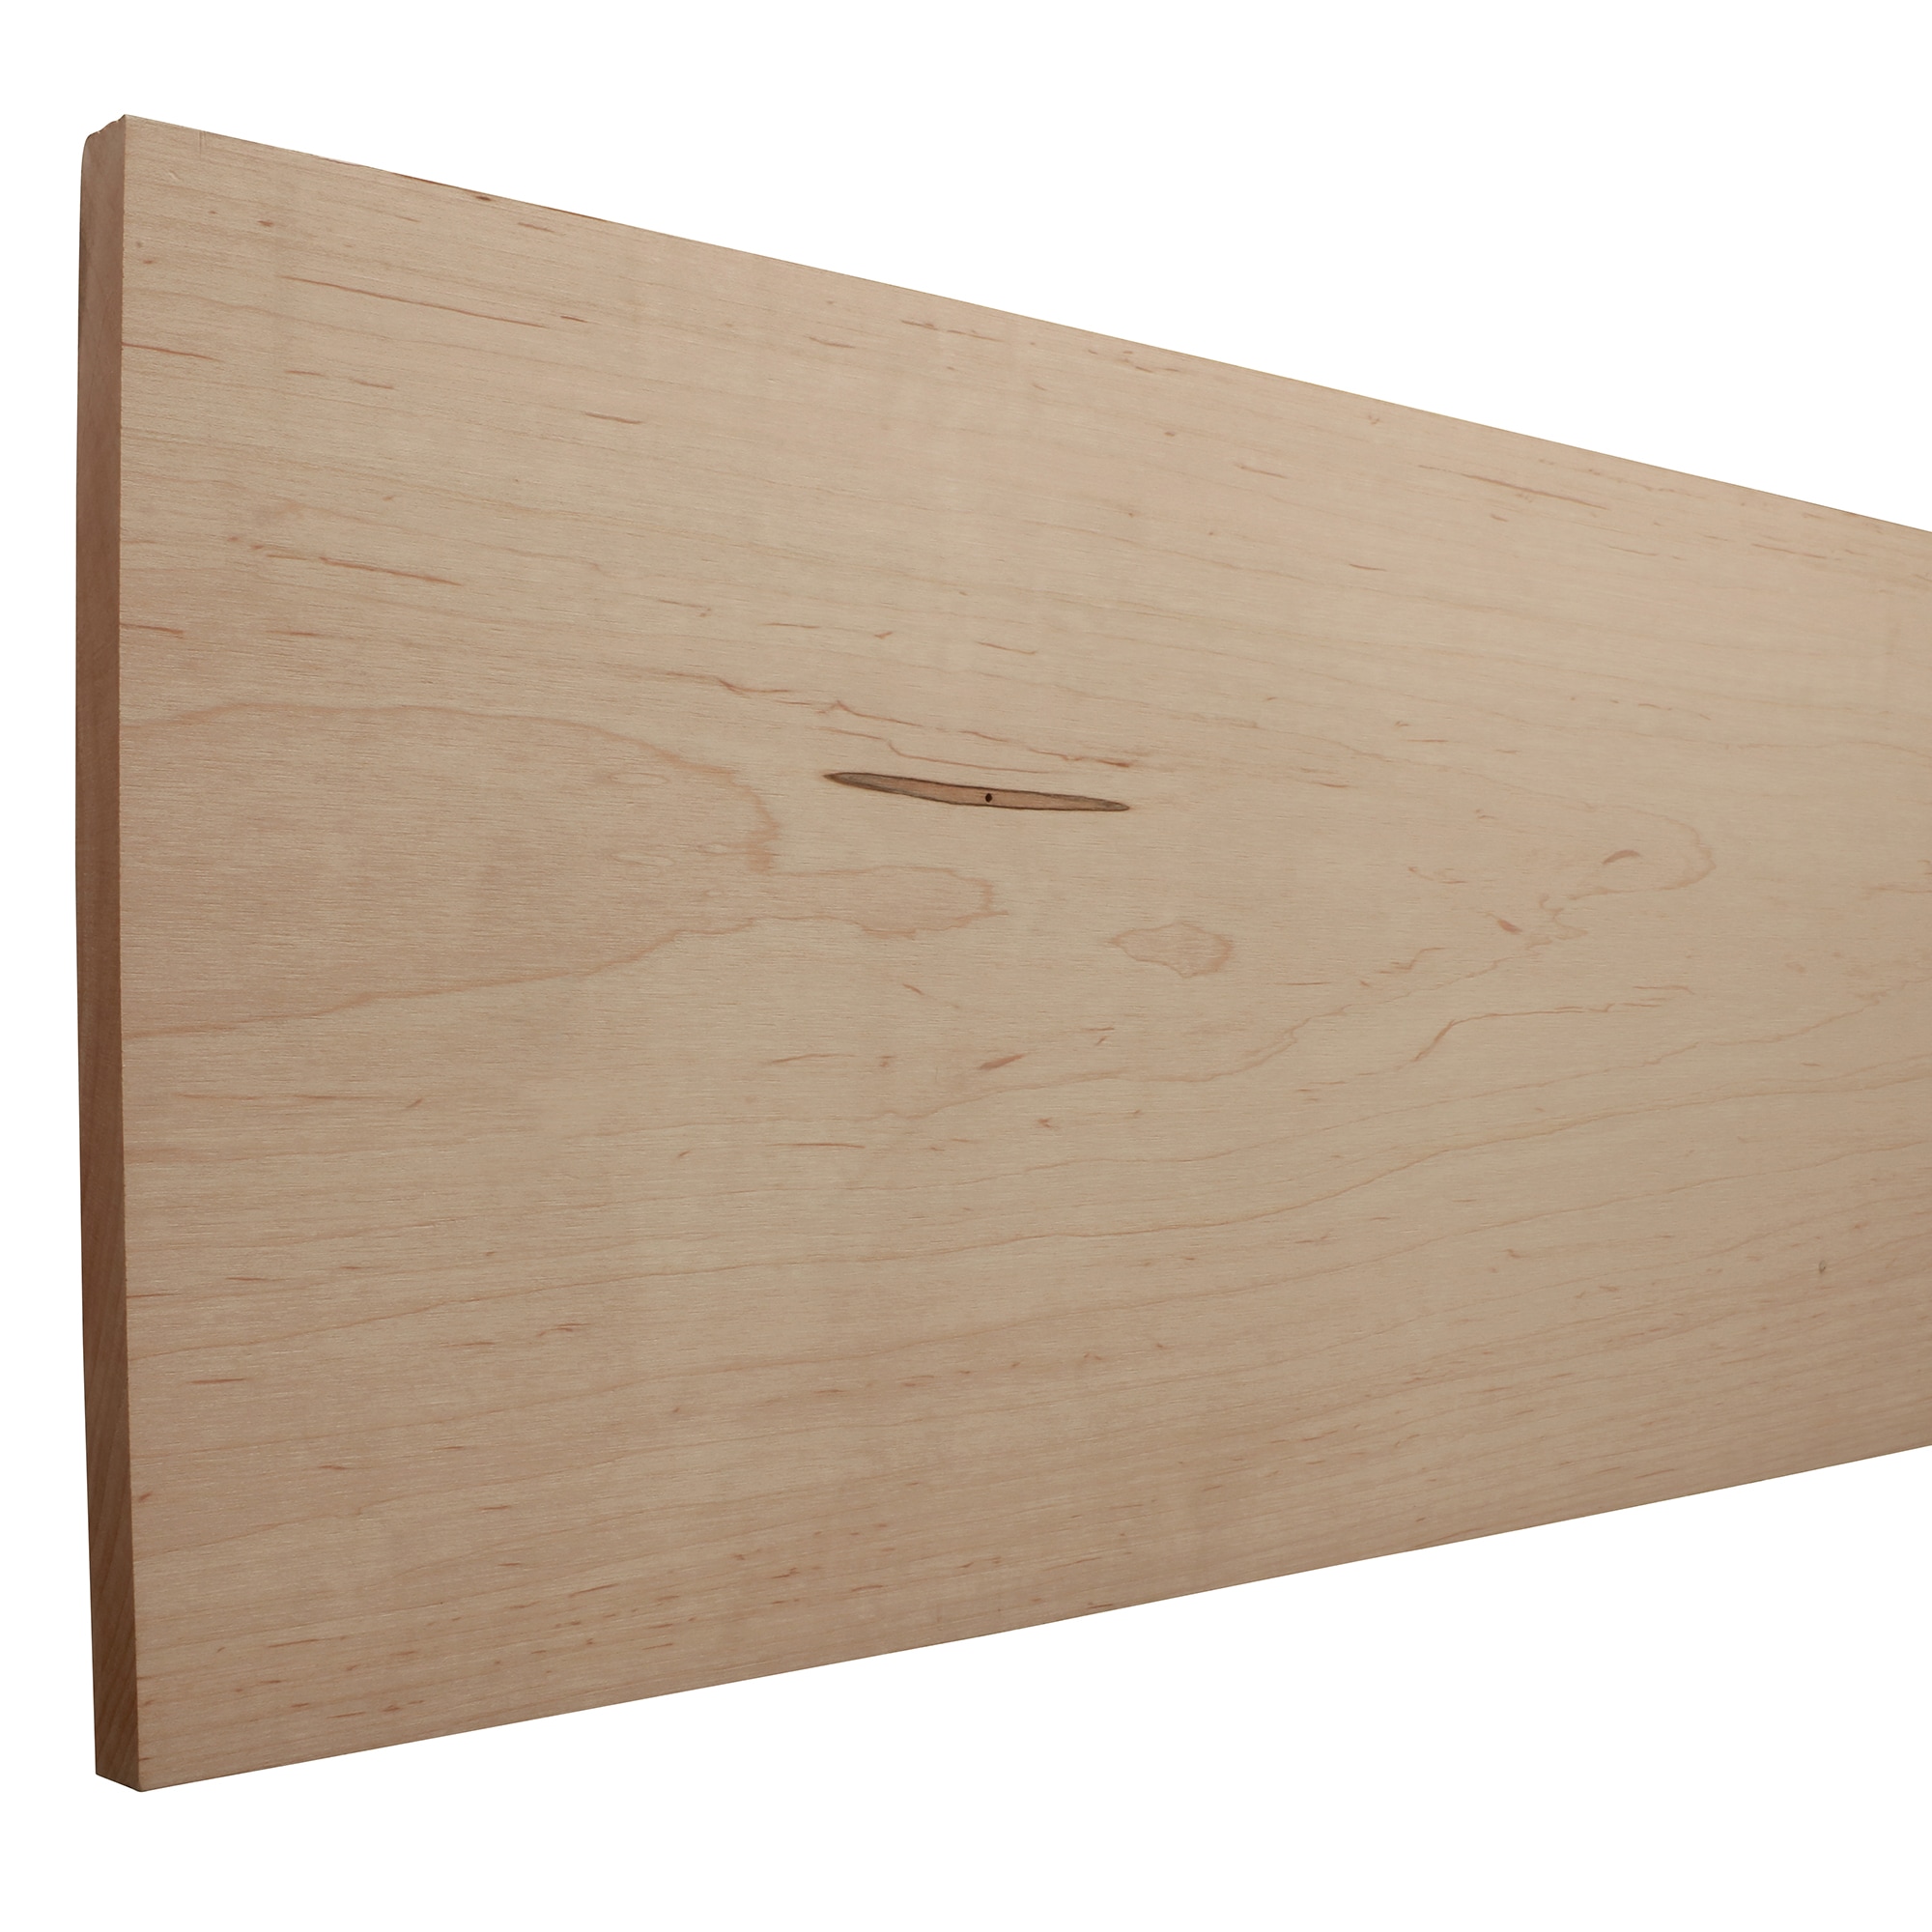 RELIABILT 1-in x 12-in x 4-ft Maple Board in the Appearance Boards ...